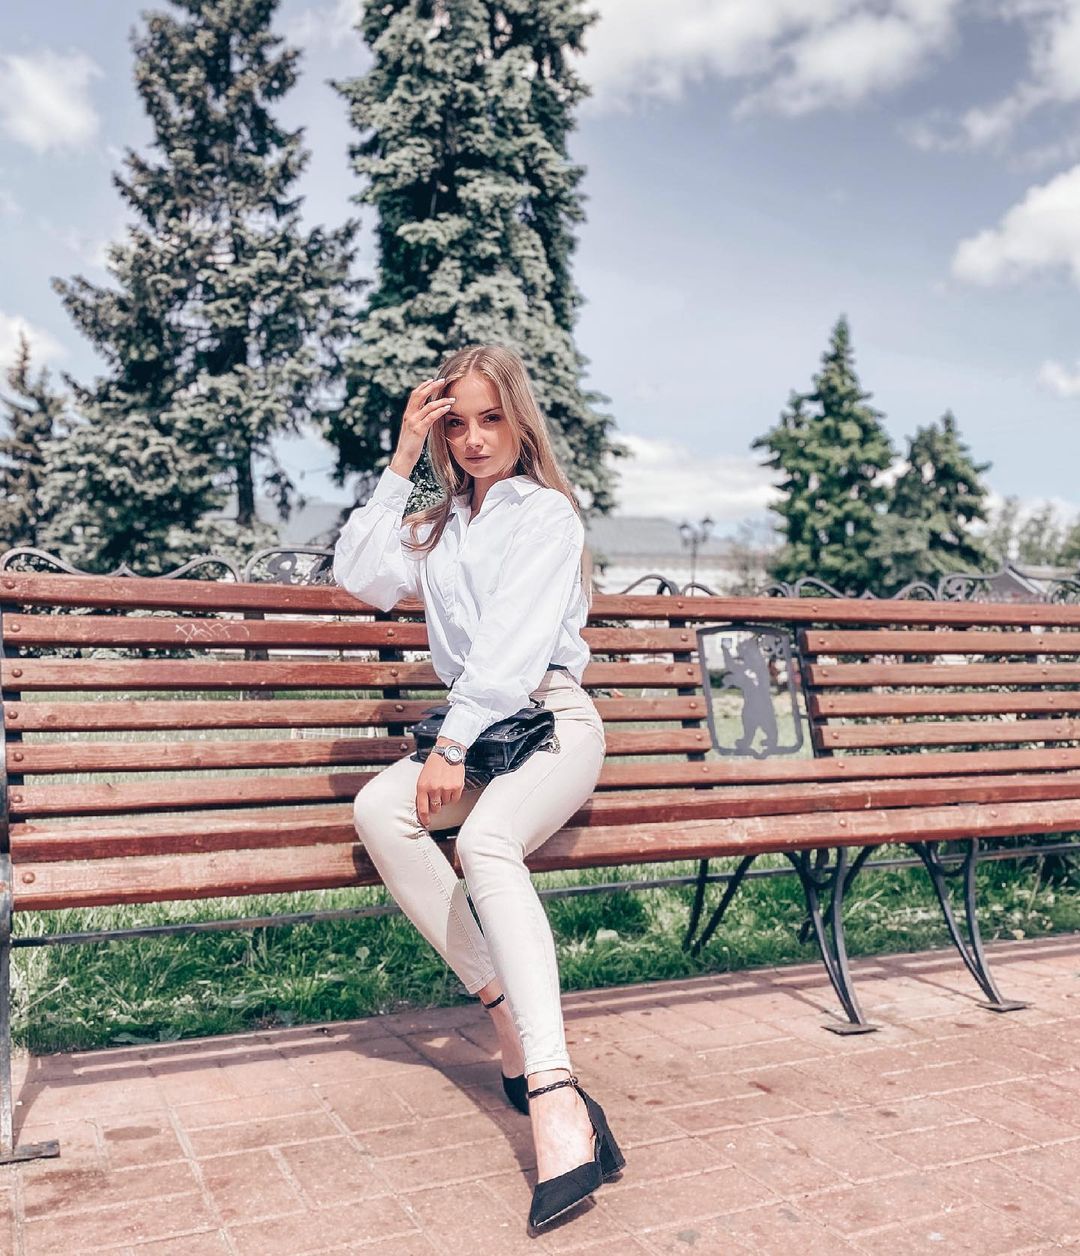 Anastasia fefilova 6 hottest pics, anastasia fefilova 6 instagram